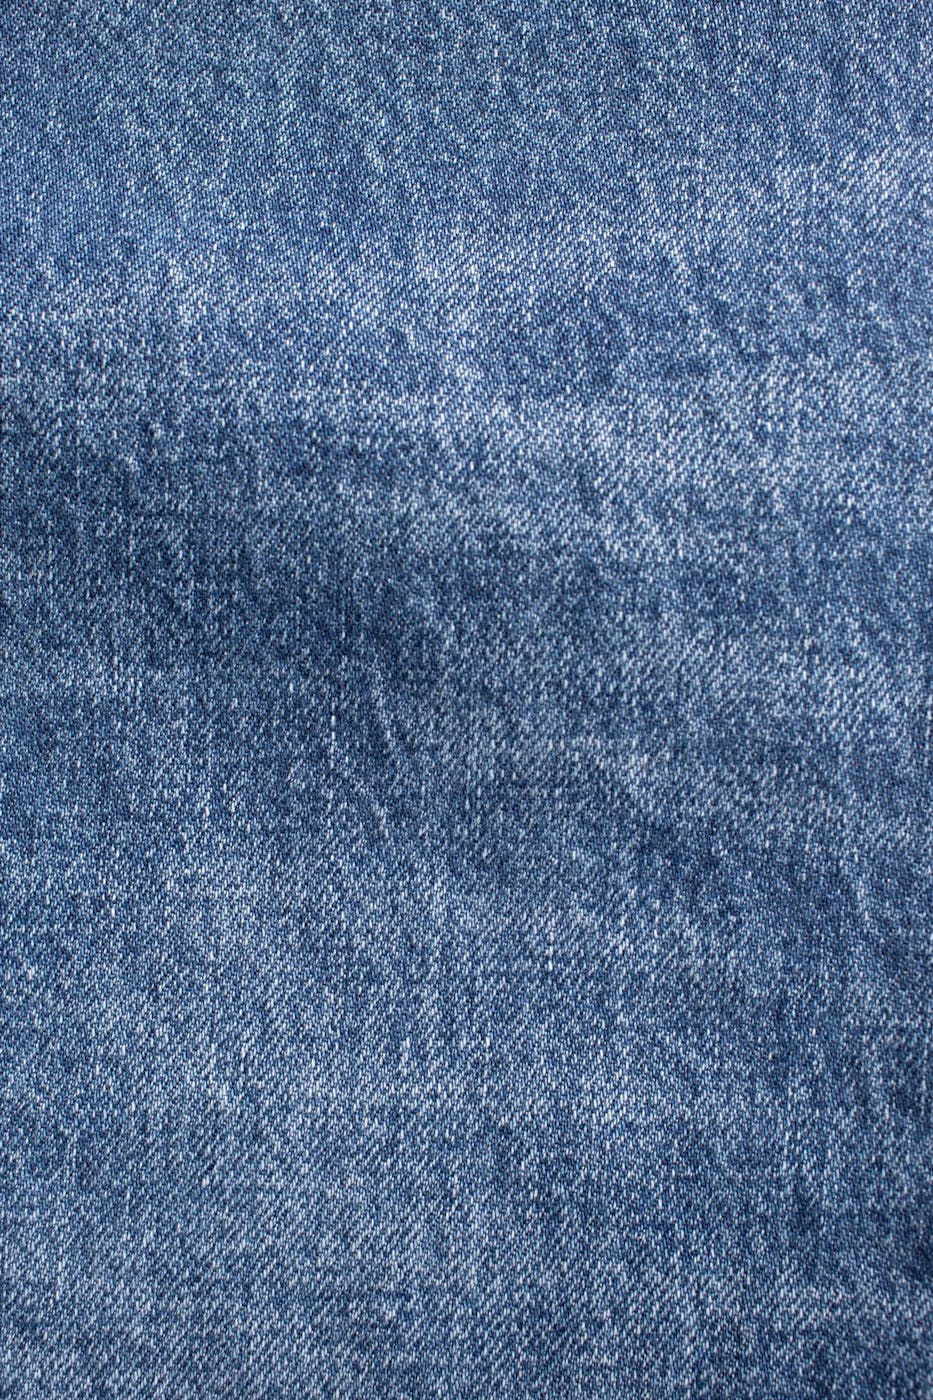 Nudie Jeans Co. - Blauwe Steady Eddie jeans